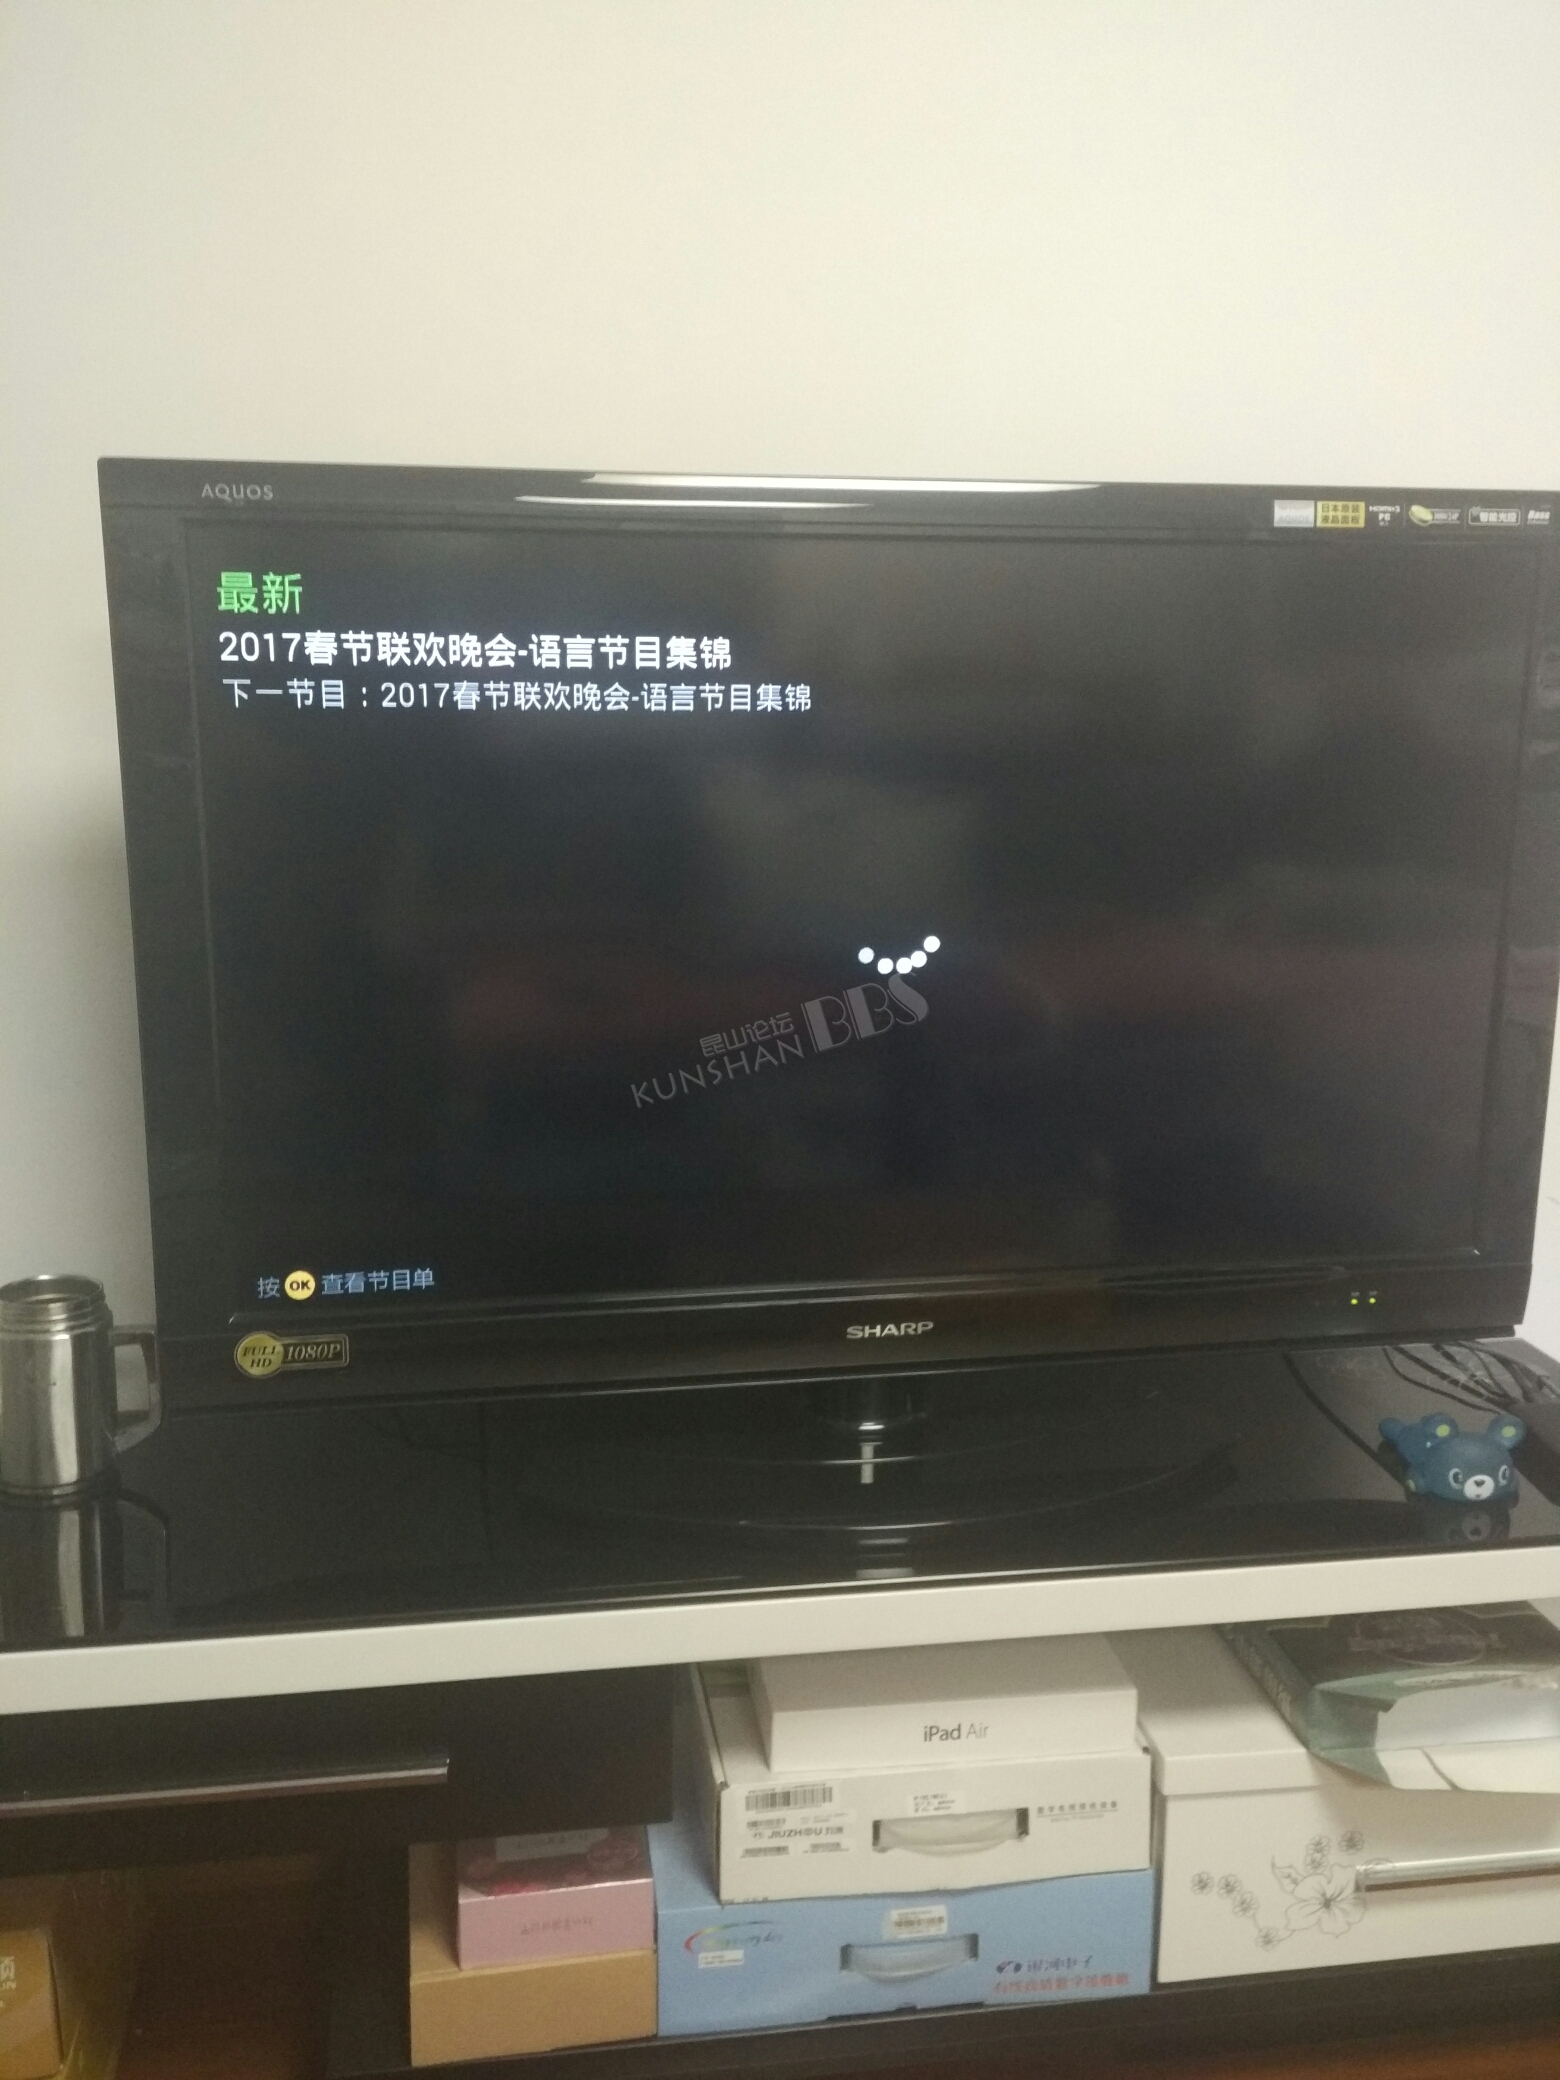 中国移动宽带电视,你新年一直搞逆天啊?